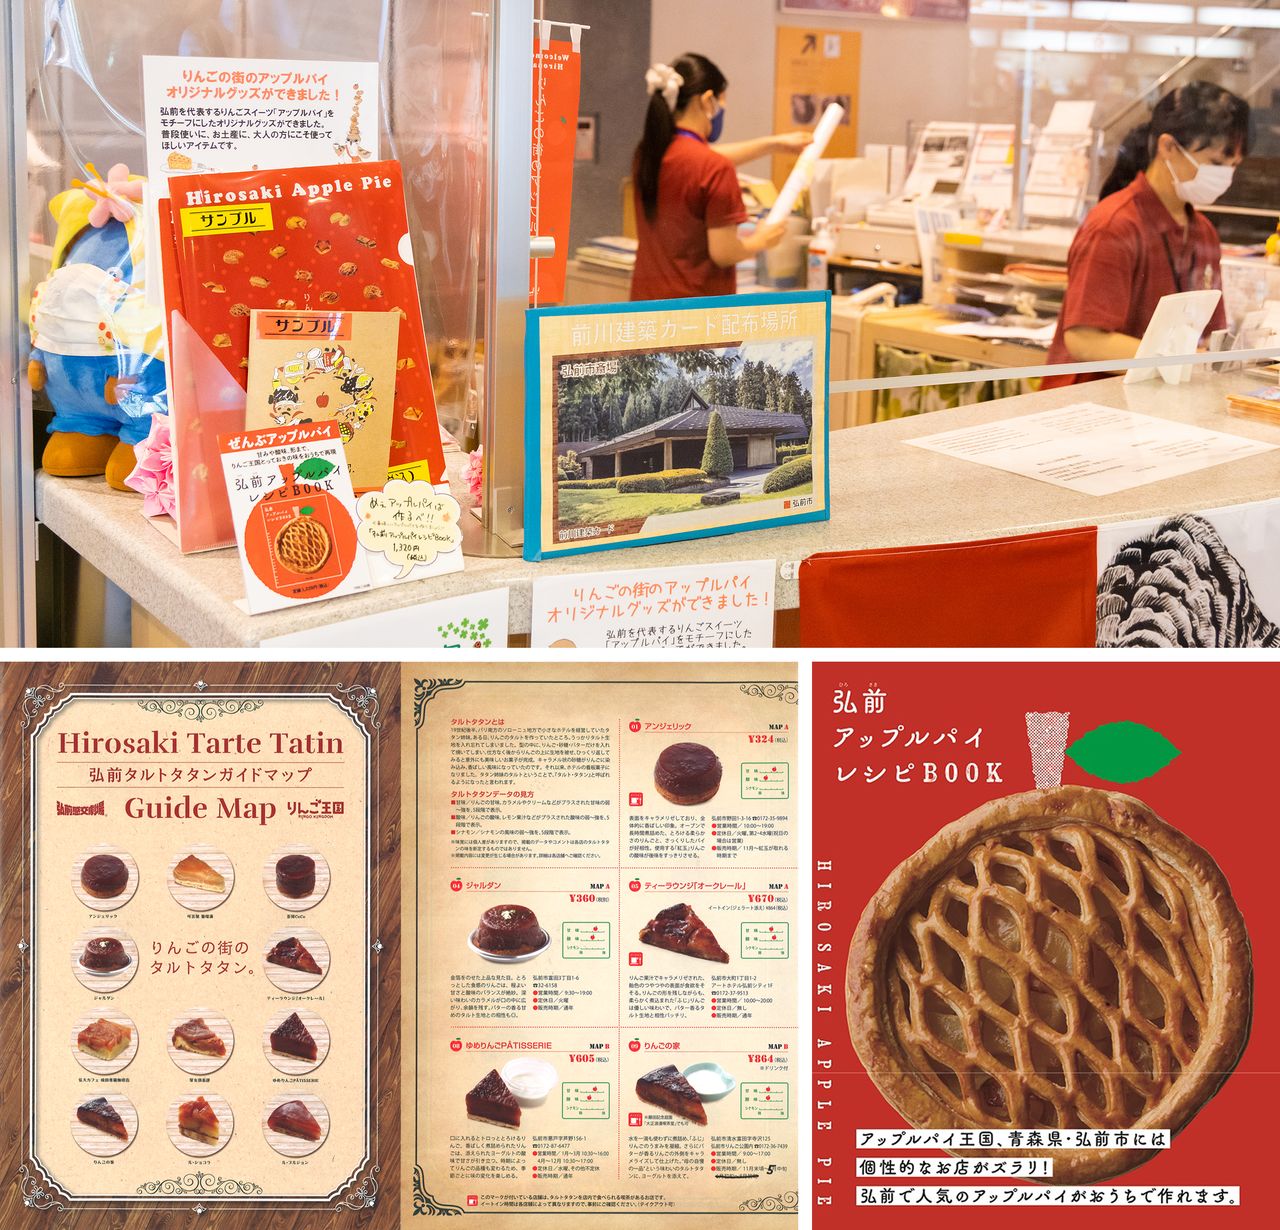 Dans le sens des aiguilles d'une montre, à partir du haut : produits dérivés de la carte au Centre d'informations touristiques, couverture du Livre des recettes de tartes aux pommes de Hirosaki et Carte guide des tartes tatin de Hirosaki.